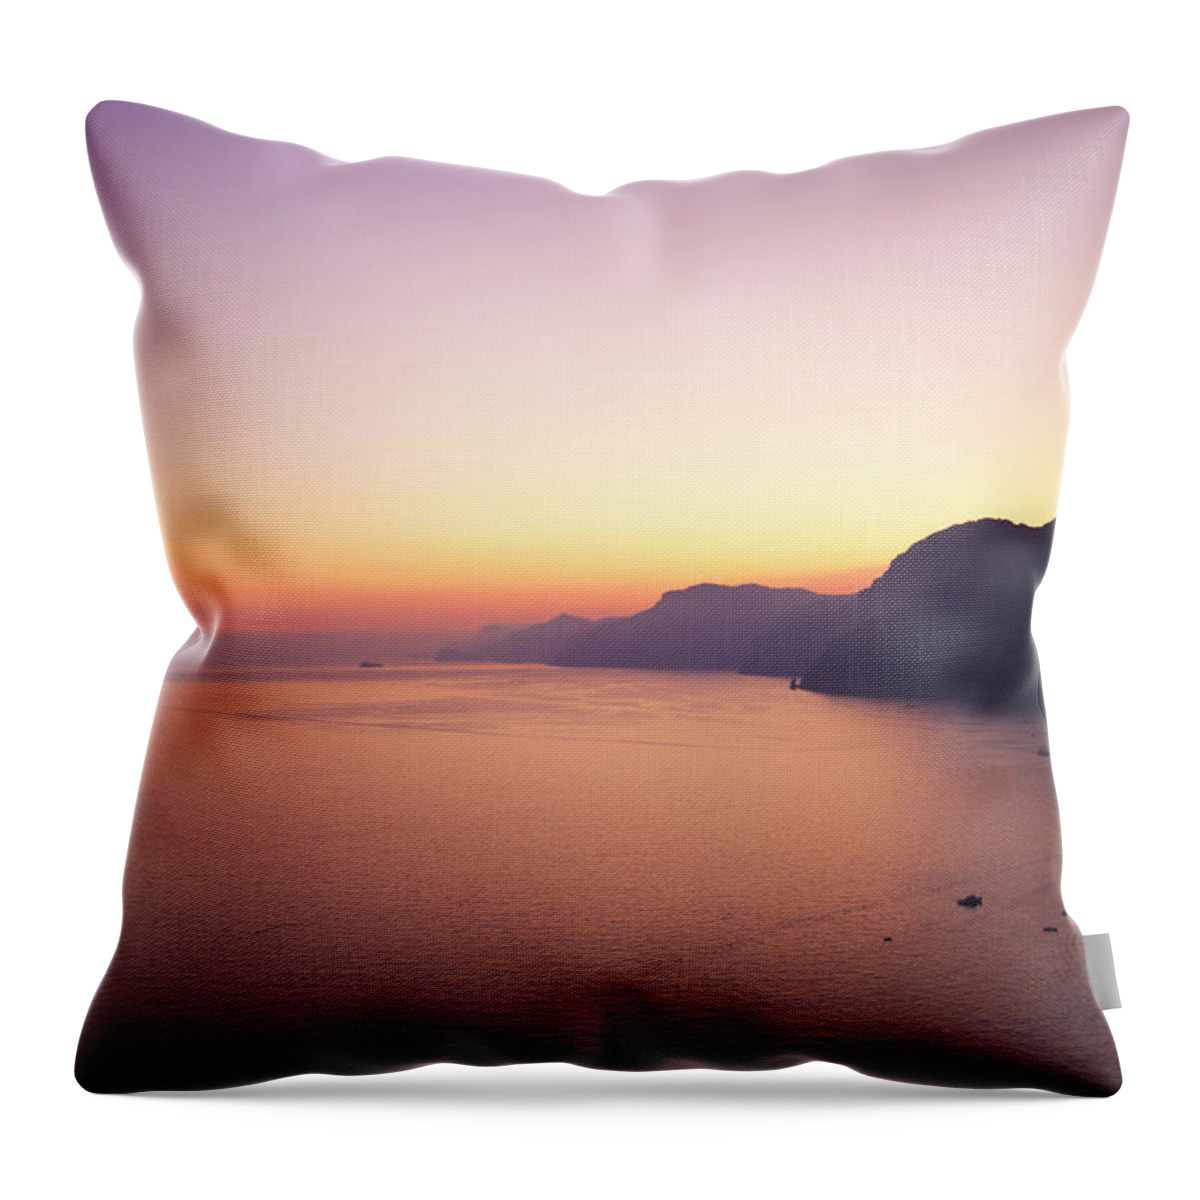 Tyrrhenian Sea Throw Pillow featuring the photograph Amalfi Coast by Spooh